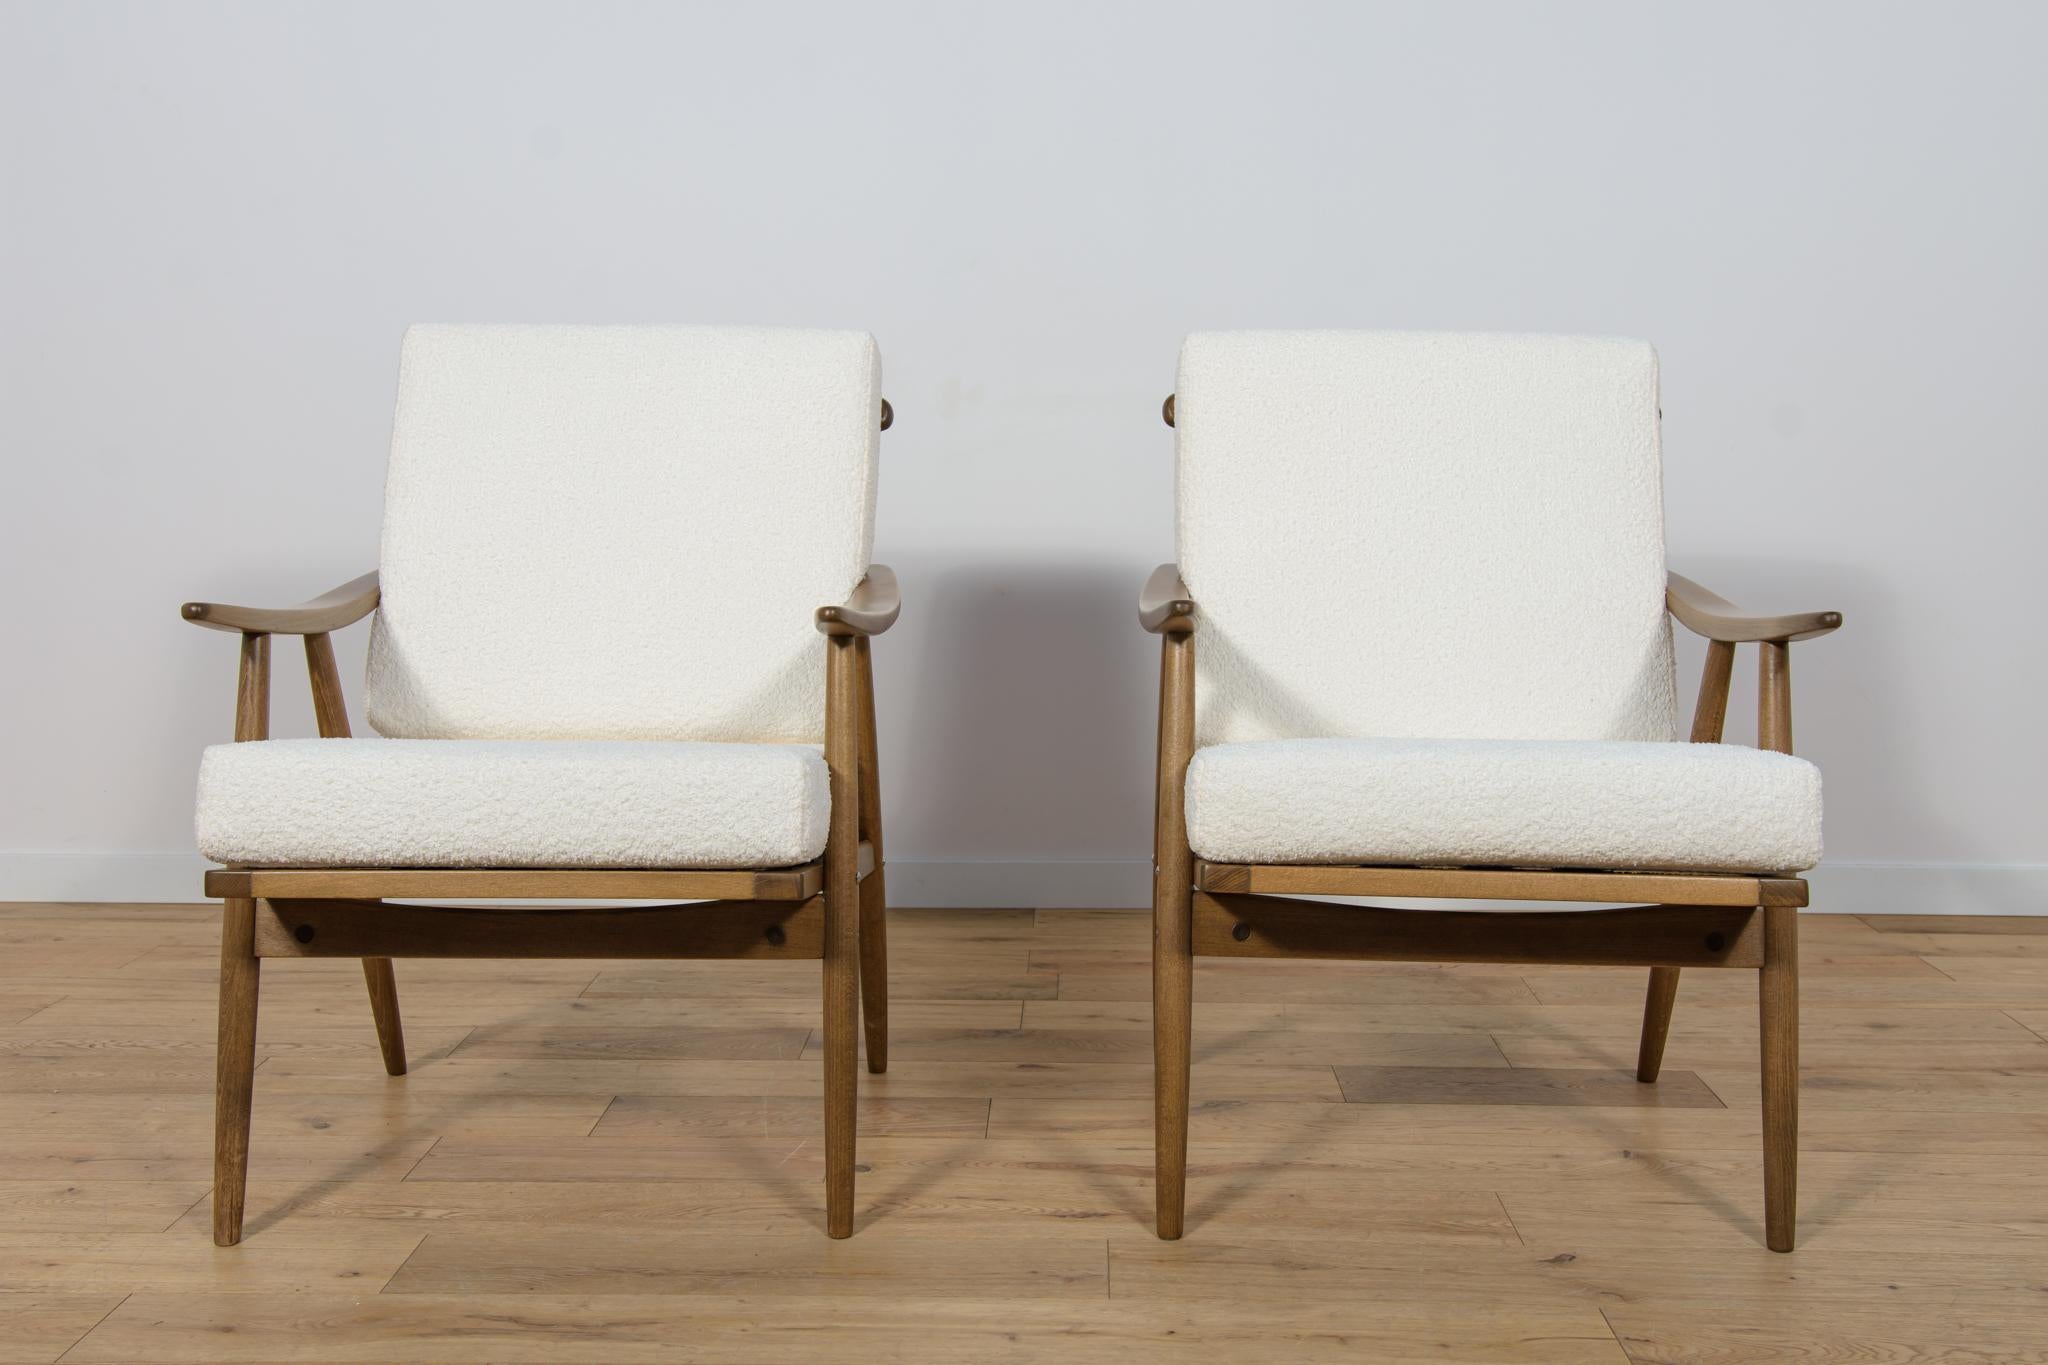 Cette paire de fauteuils a été produite par la société tchécoslovaque TON dans les années 1960. Les éléments en hêtre ont été nettoyés de l'ancienne surface et peints dans une teinte noyer et finis avec une laque semi-mate résistante. Les coussins